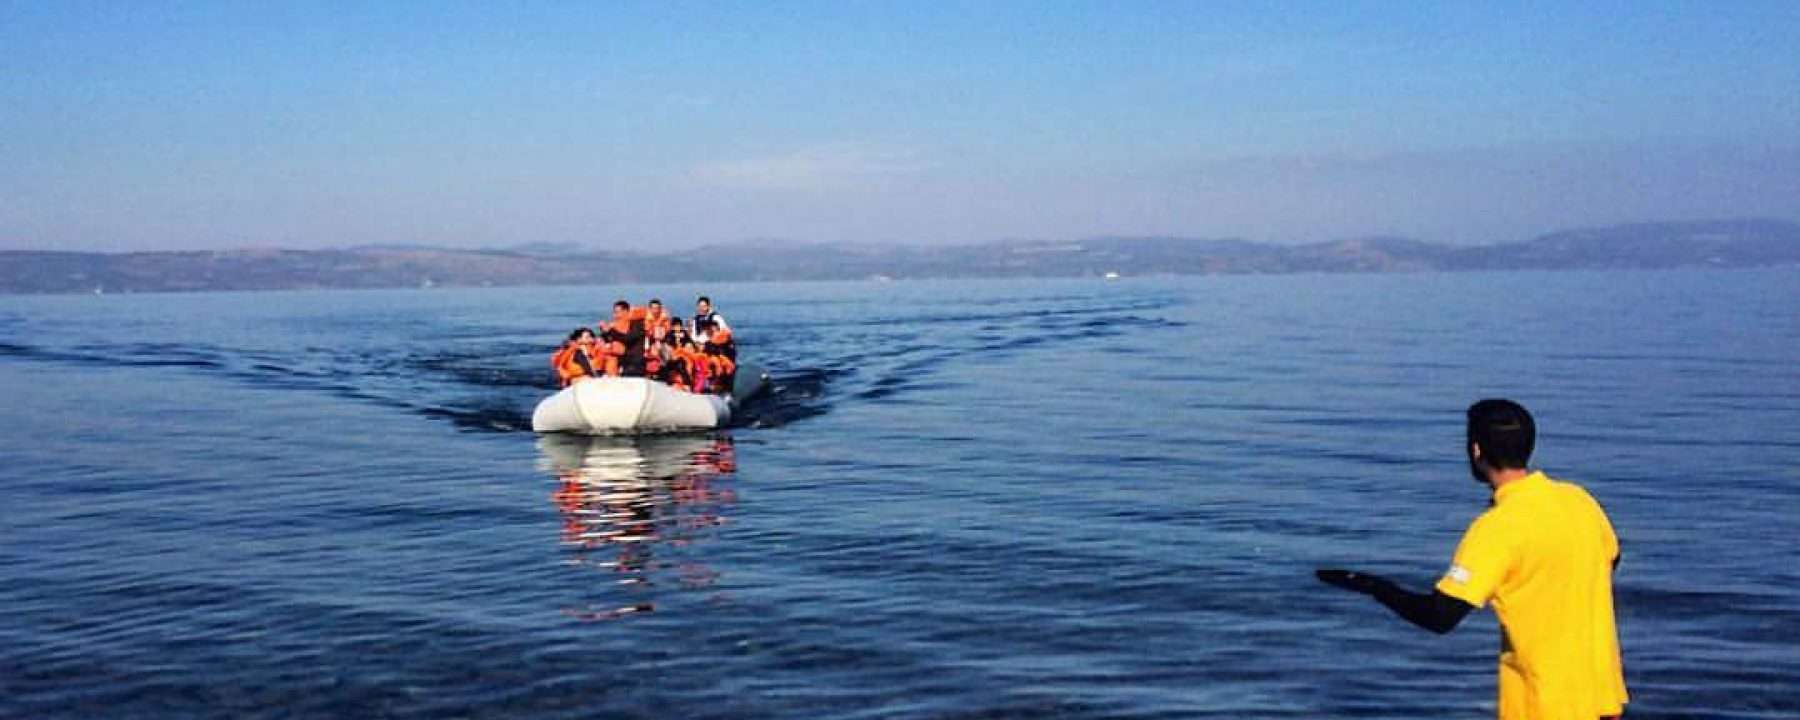 Εννέα οι νεκροί από το ναυάγιο σκάφους που μετέφερε πρόσφυγες και μετανάστες  στη Μύκονο